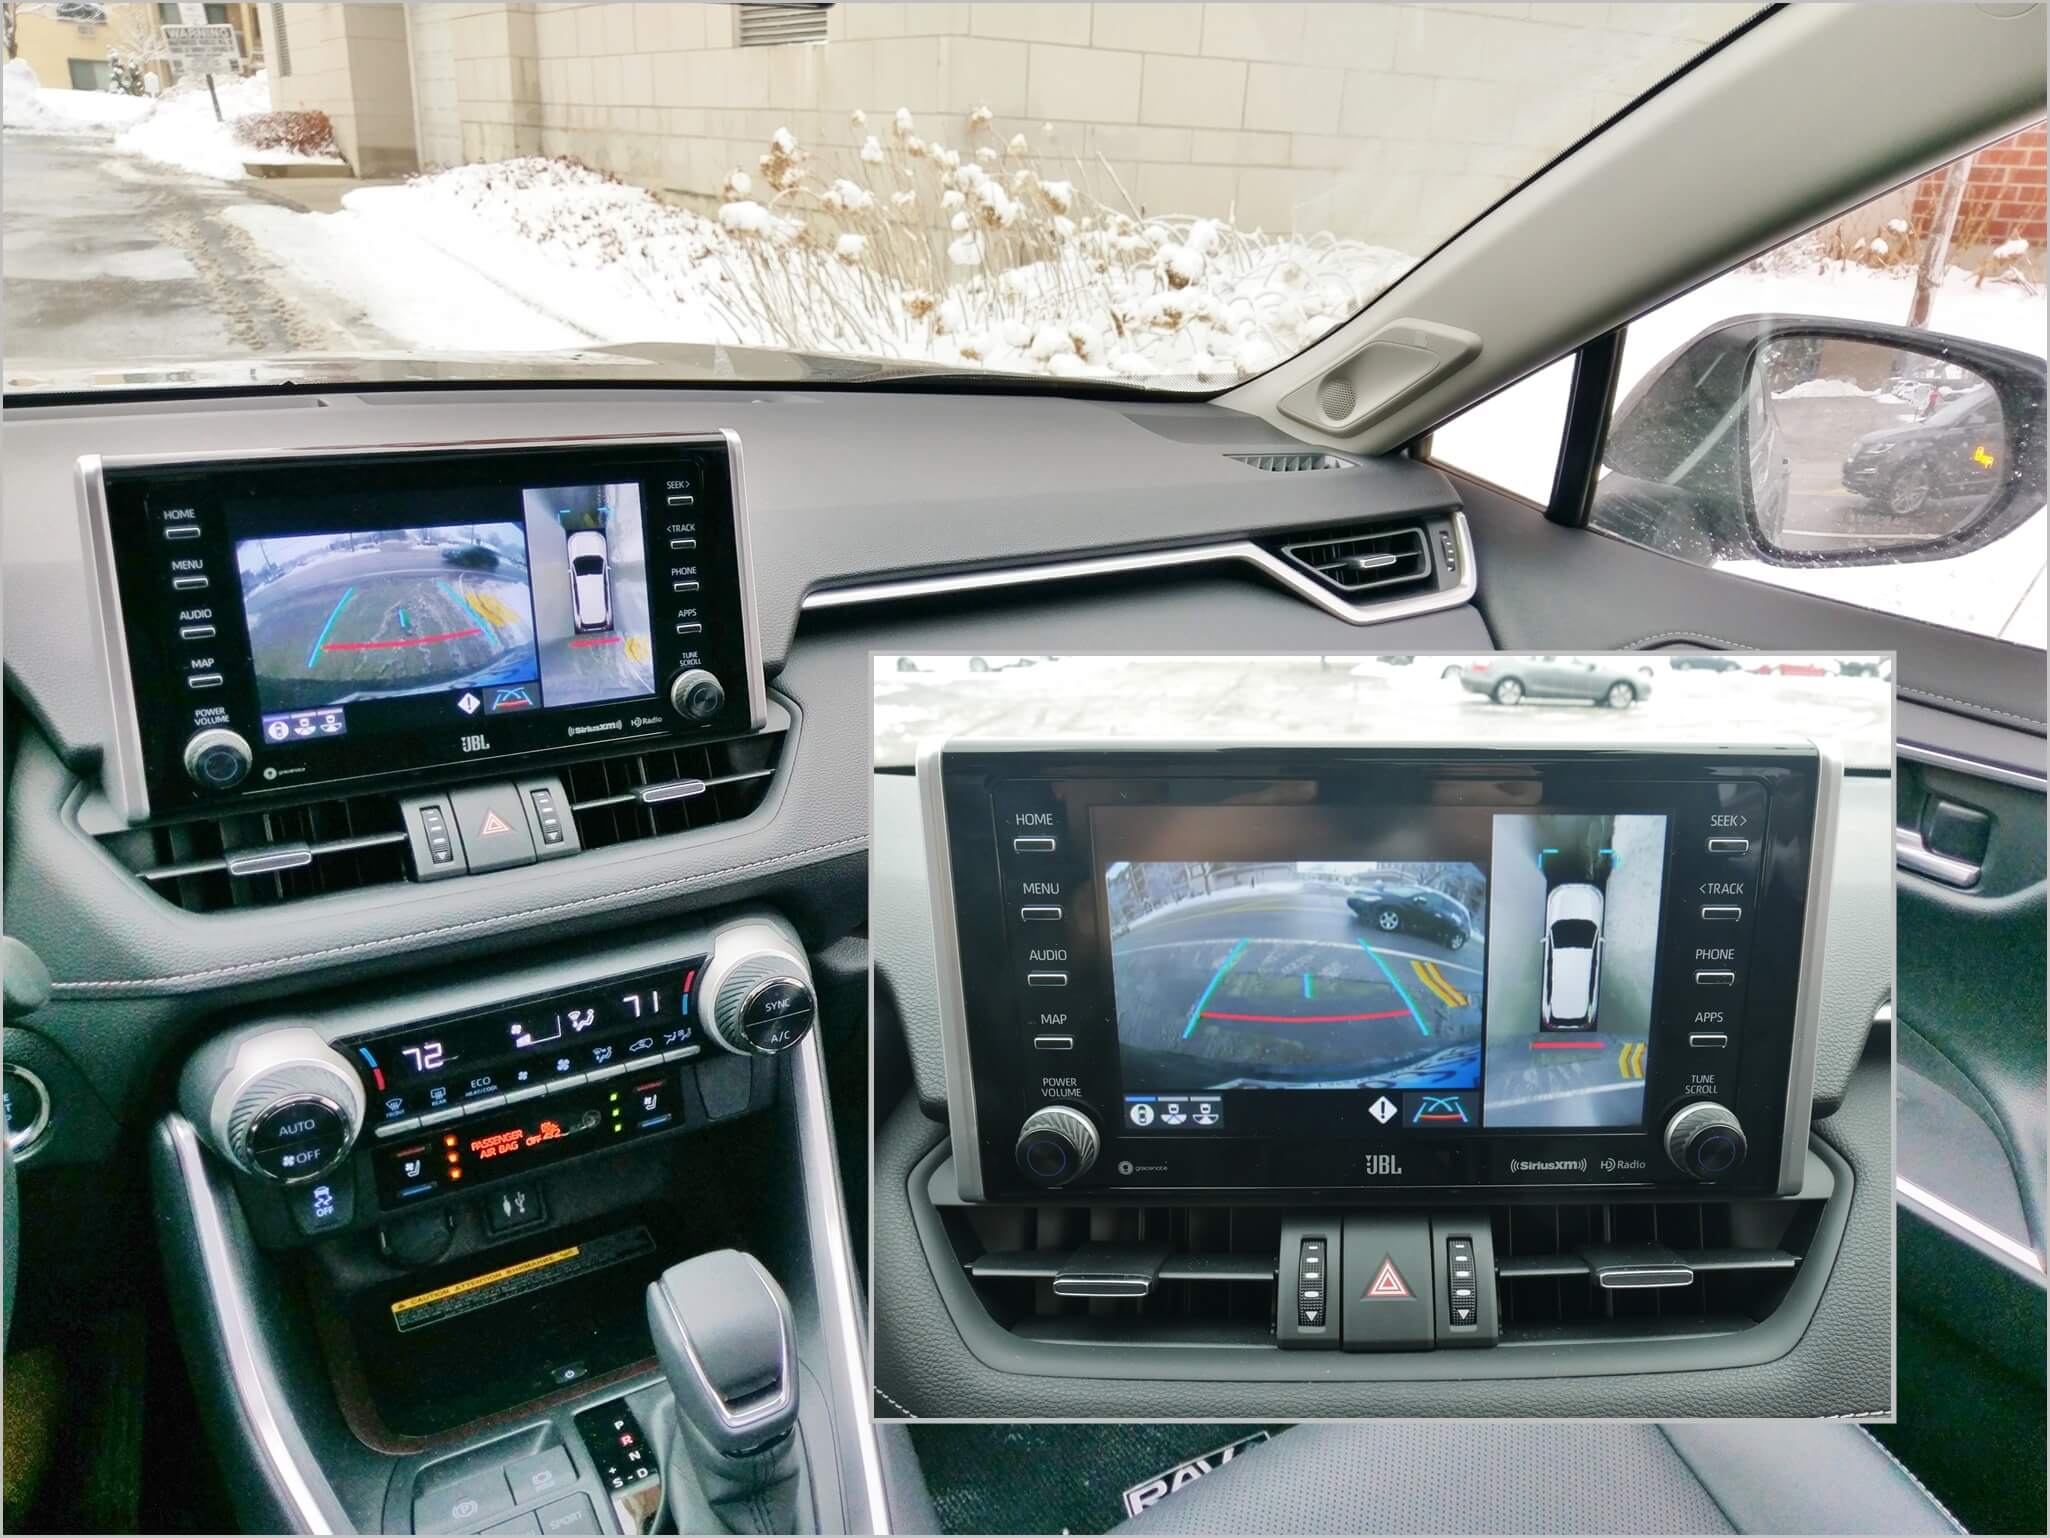 2019 Toyota RAV4 Limited AWD: Surround camera & sonar rear Cross Traffic warning